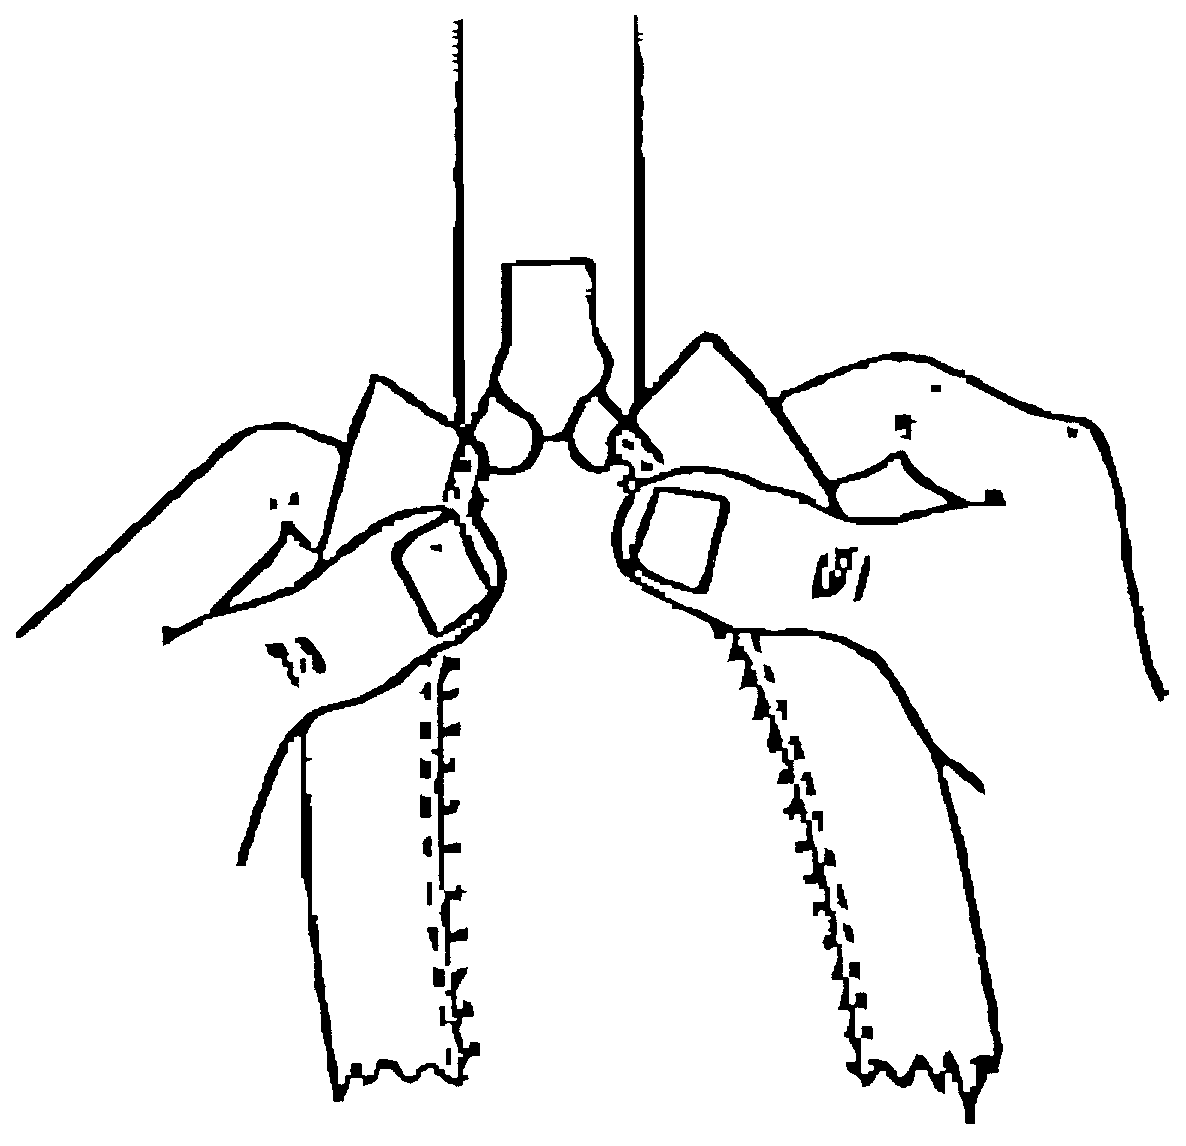 Installing Zipper Pulls with a Zipper Jig 